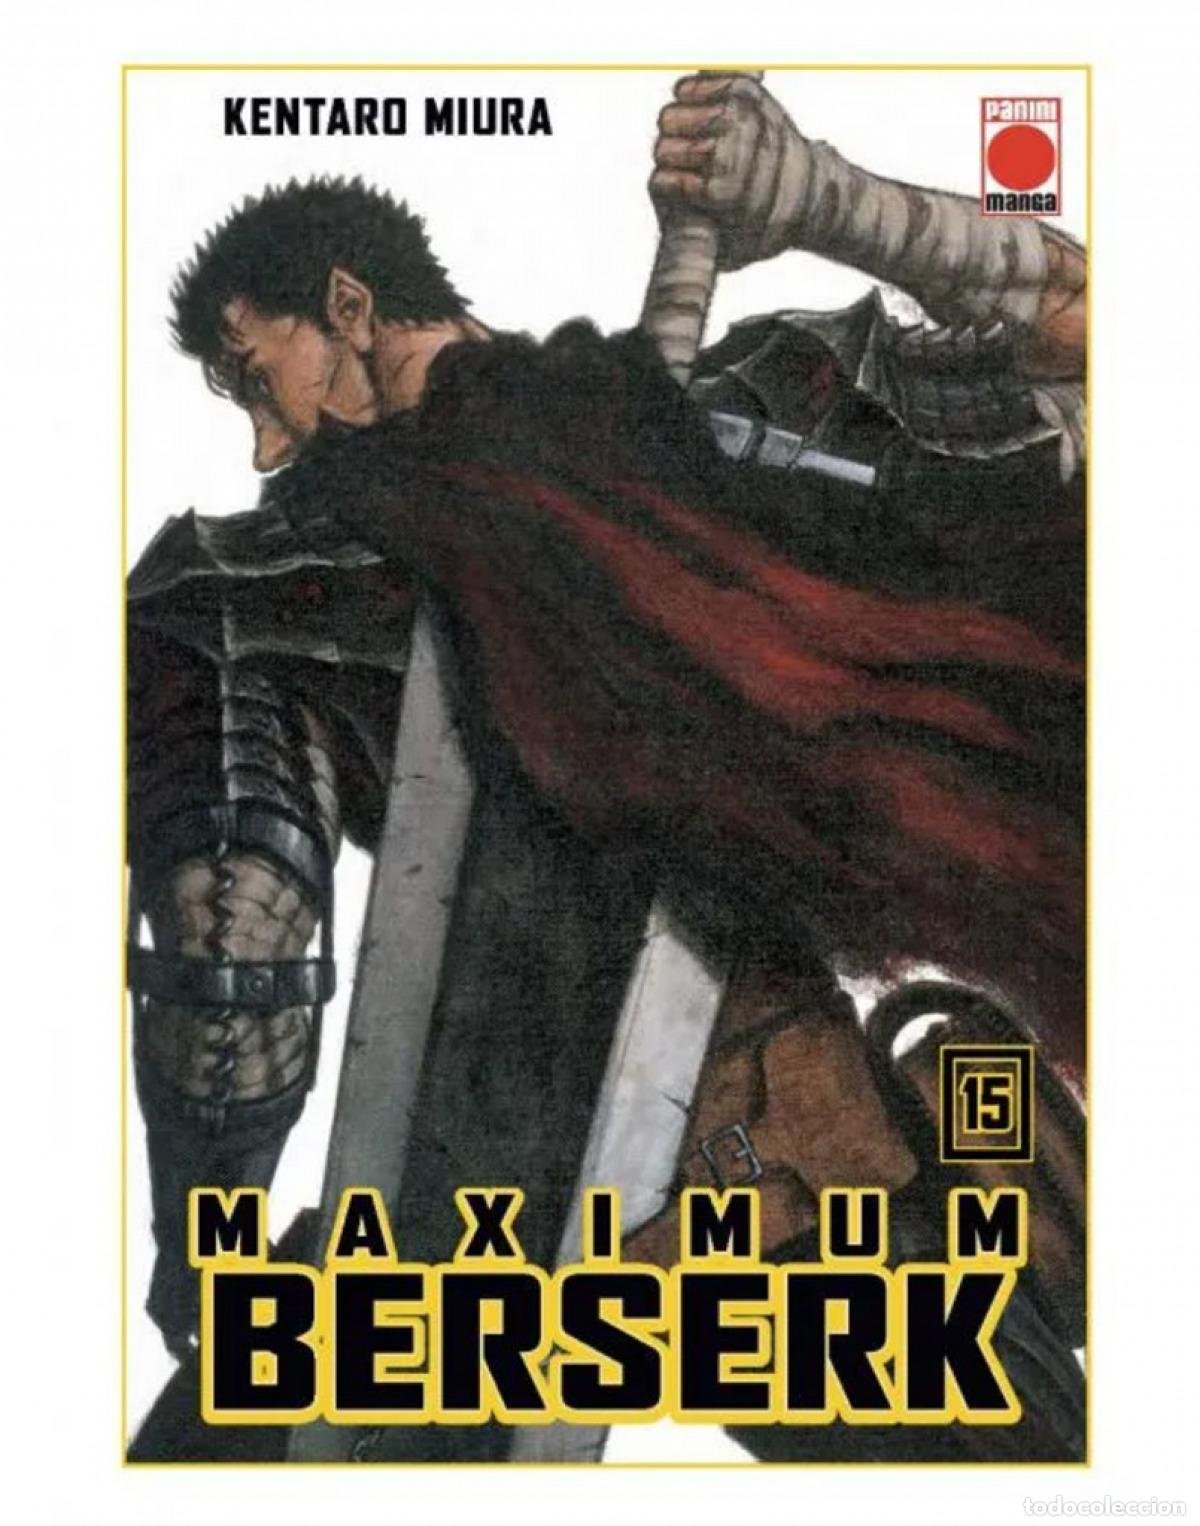 Maximum Berserk 1 - Kentaro Miura -5% en libros